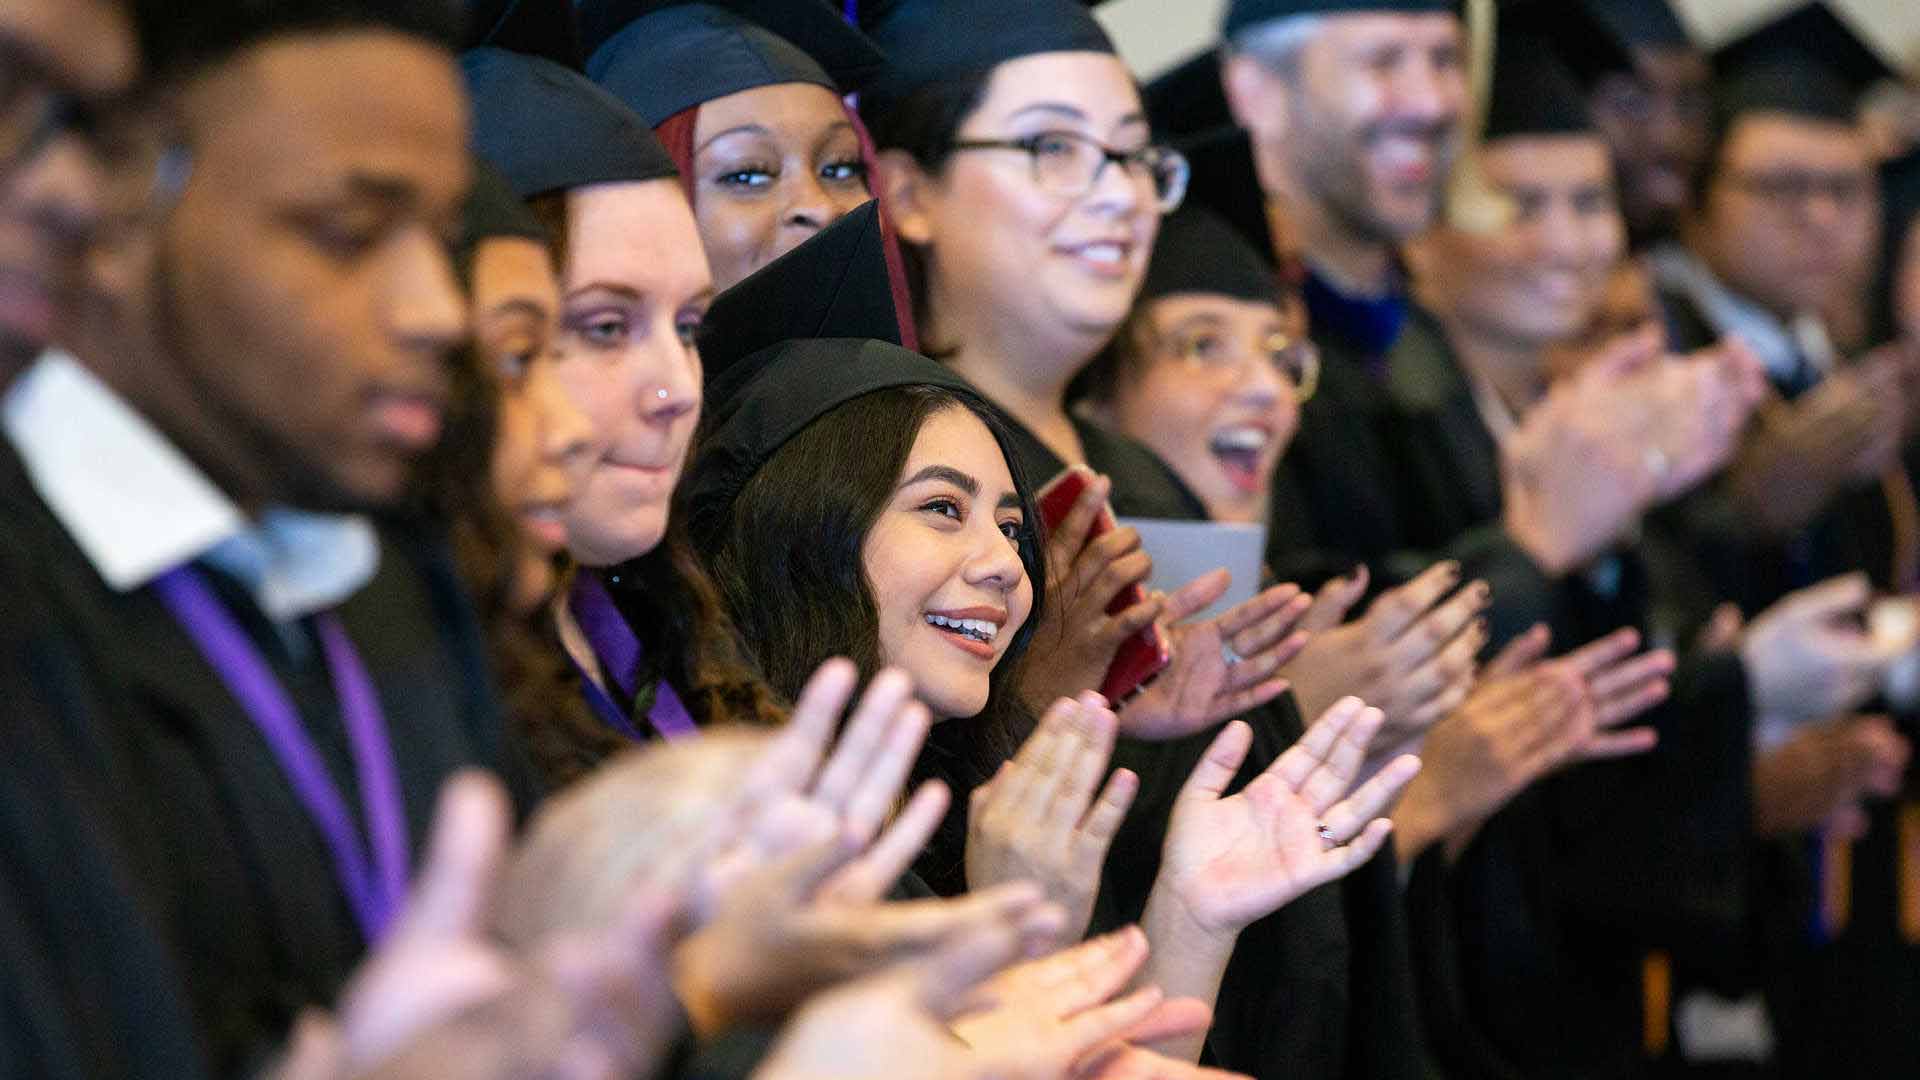 Graduate students clap at commencement